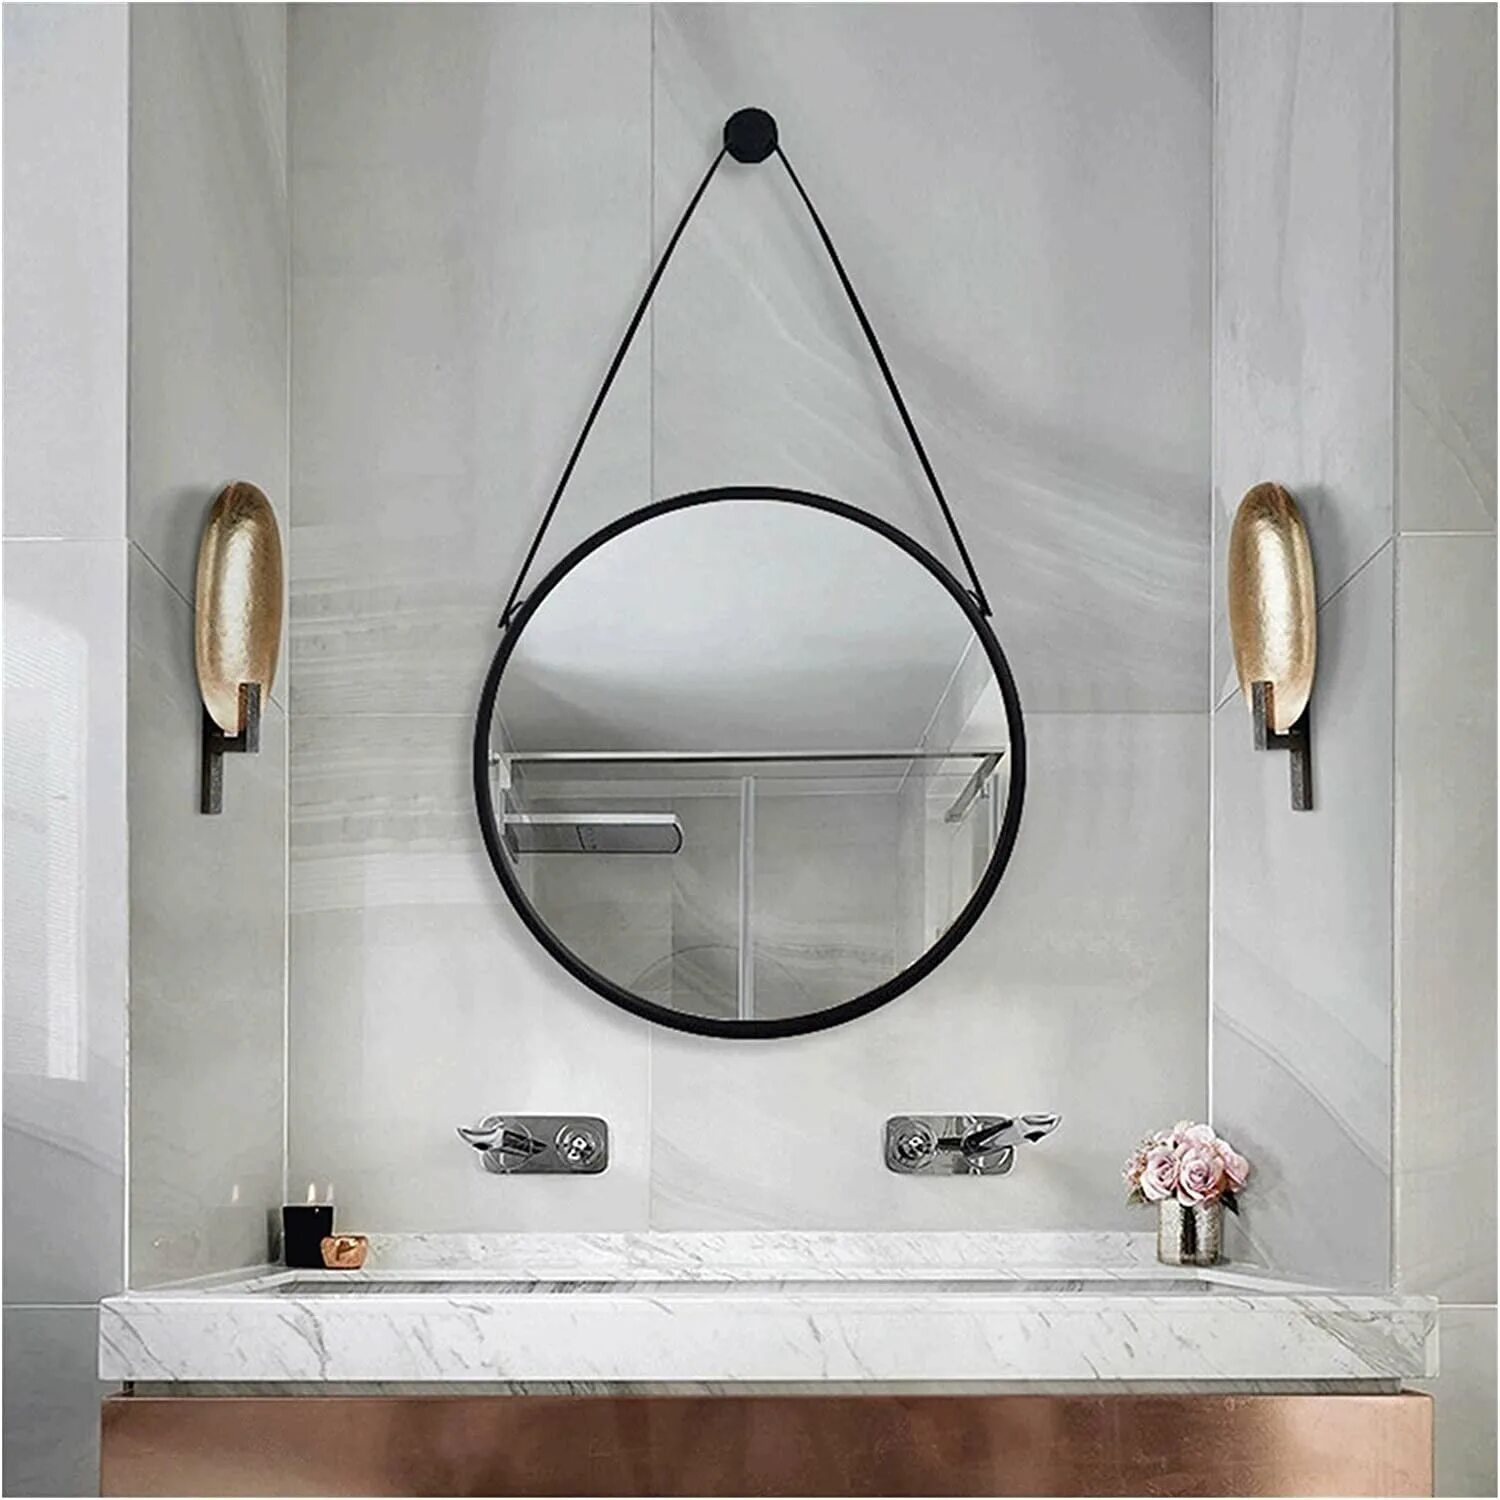 Подвесное зеркало для ванной. Зеркало подвесное в ванную. Ванная с круглым зеркалом. Зеркало на ремне в интерьере ванной. Зеркала в впнну подвесные.